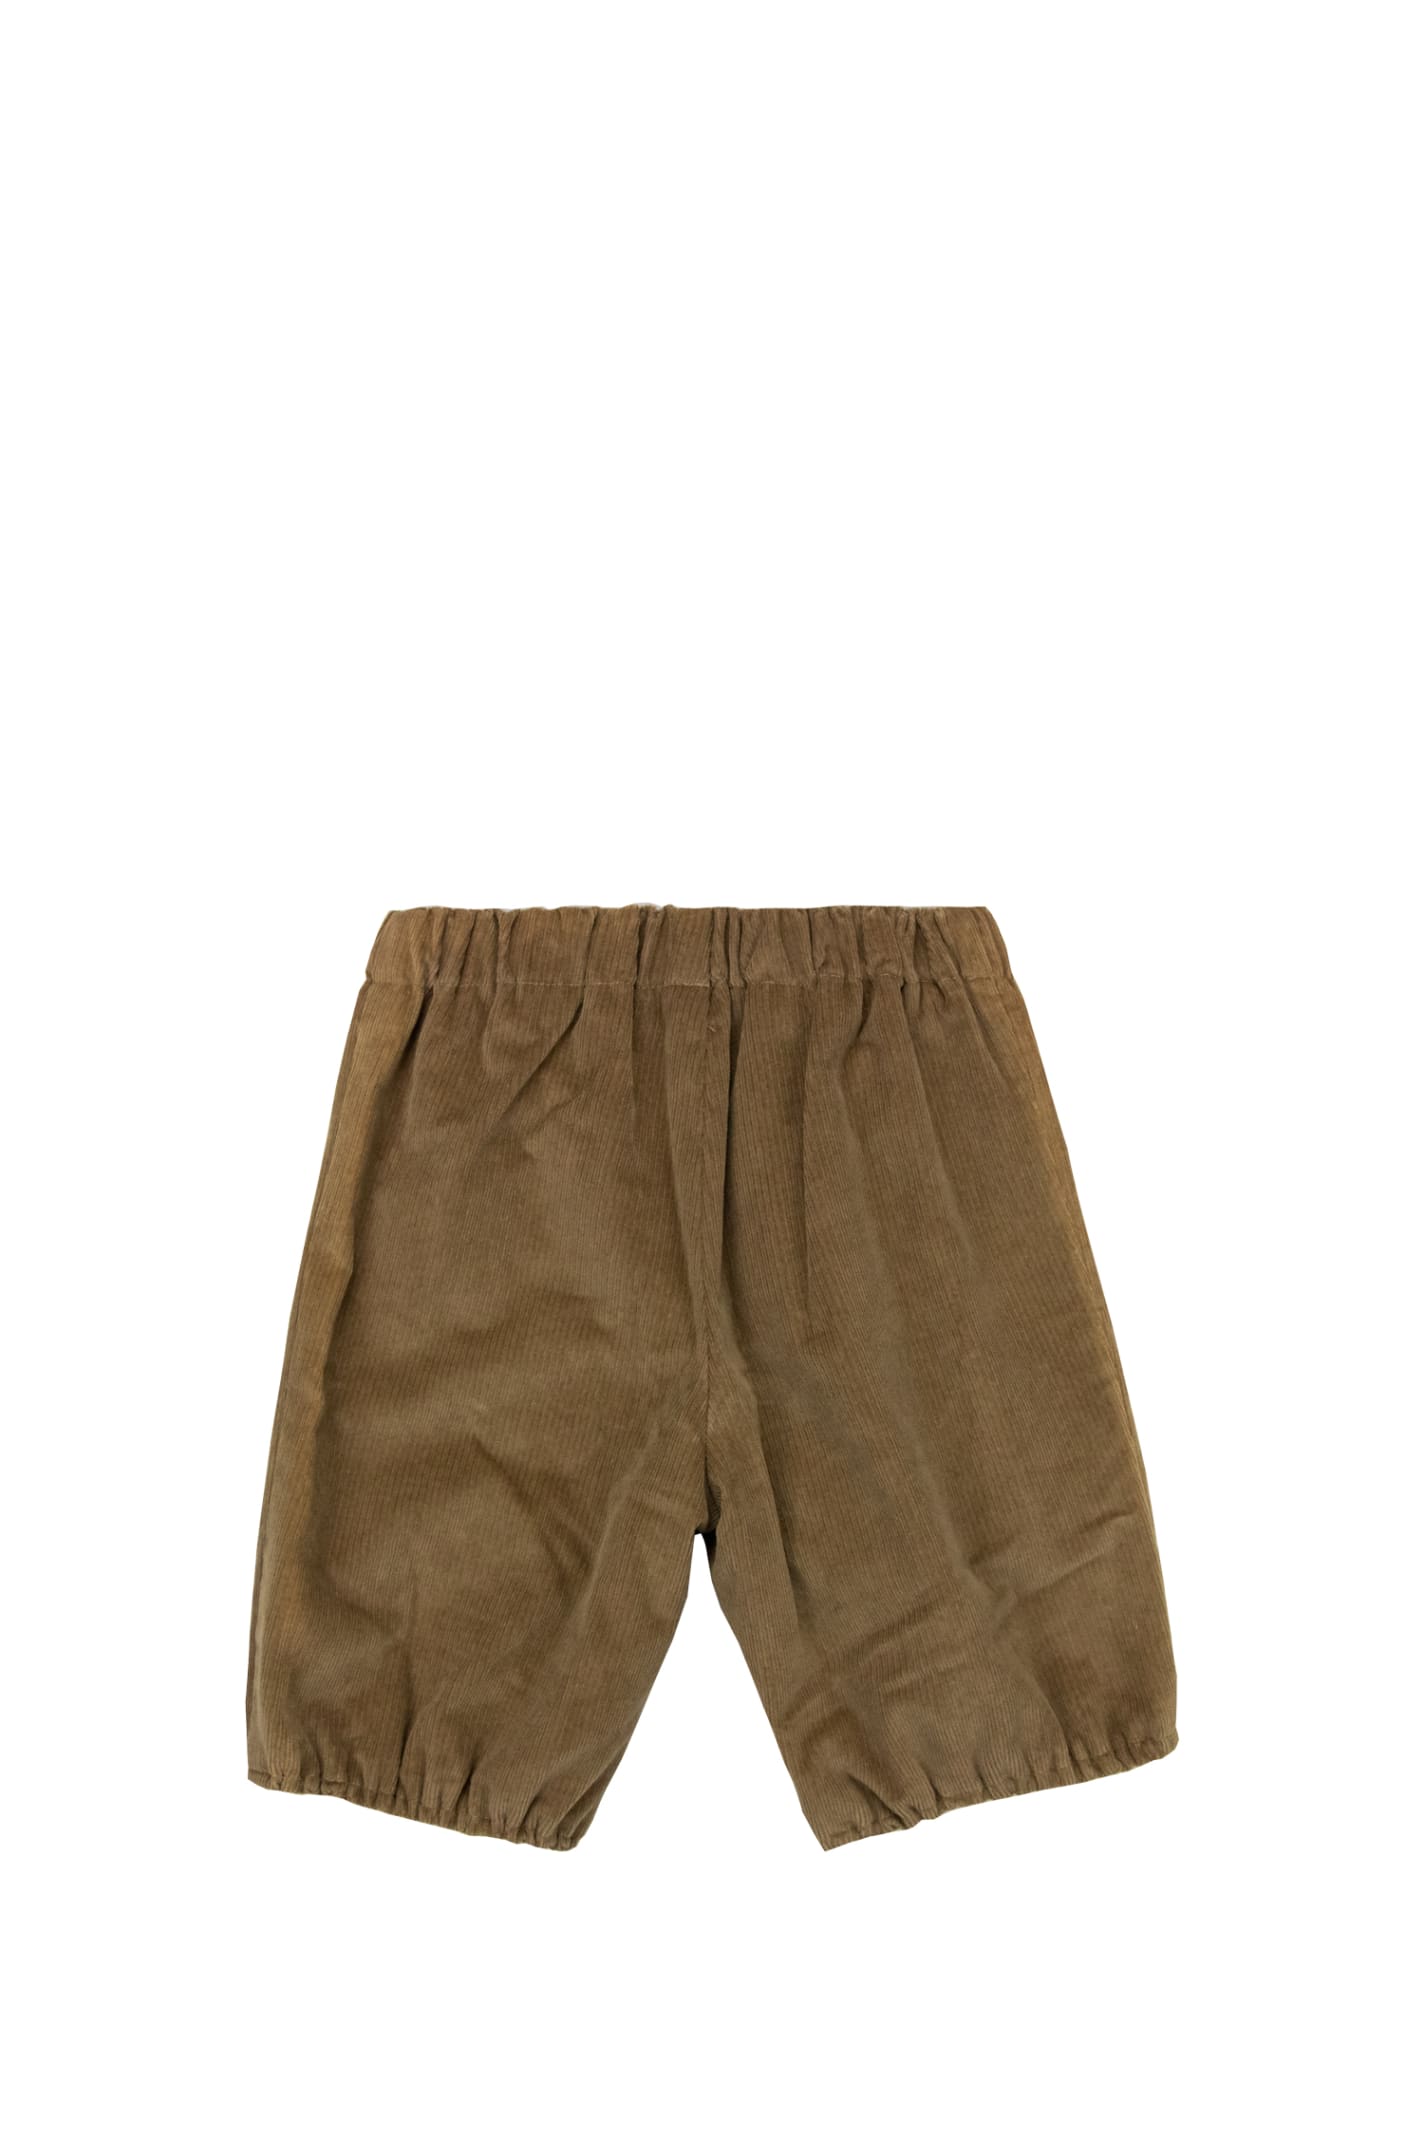 Shop La Stupenderia Shorts In Brown